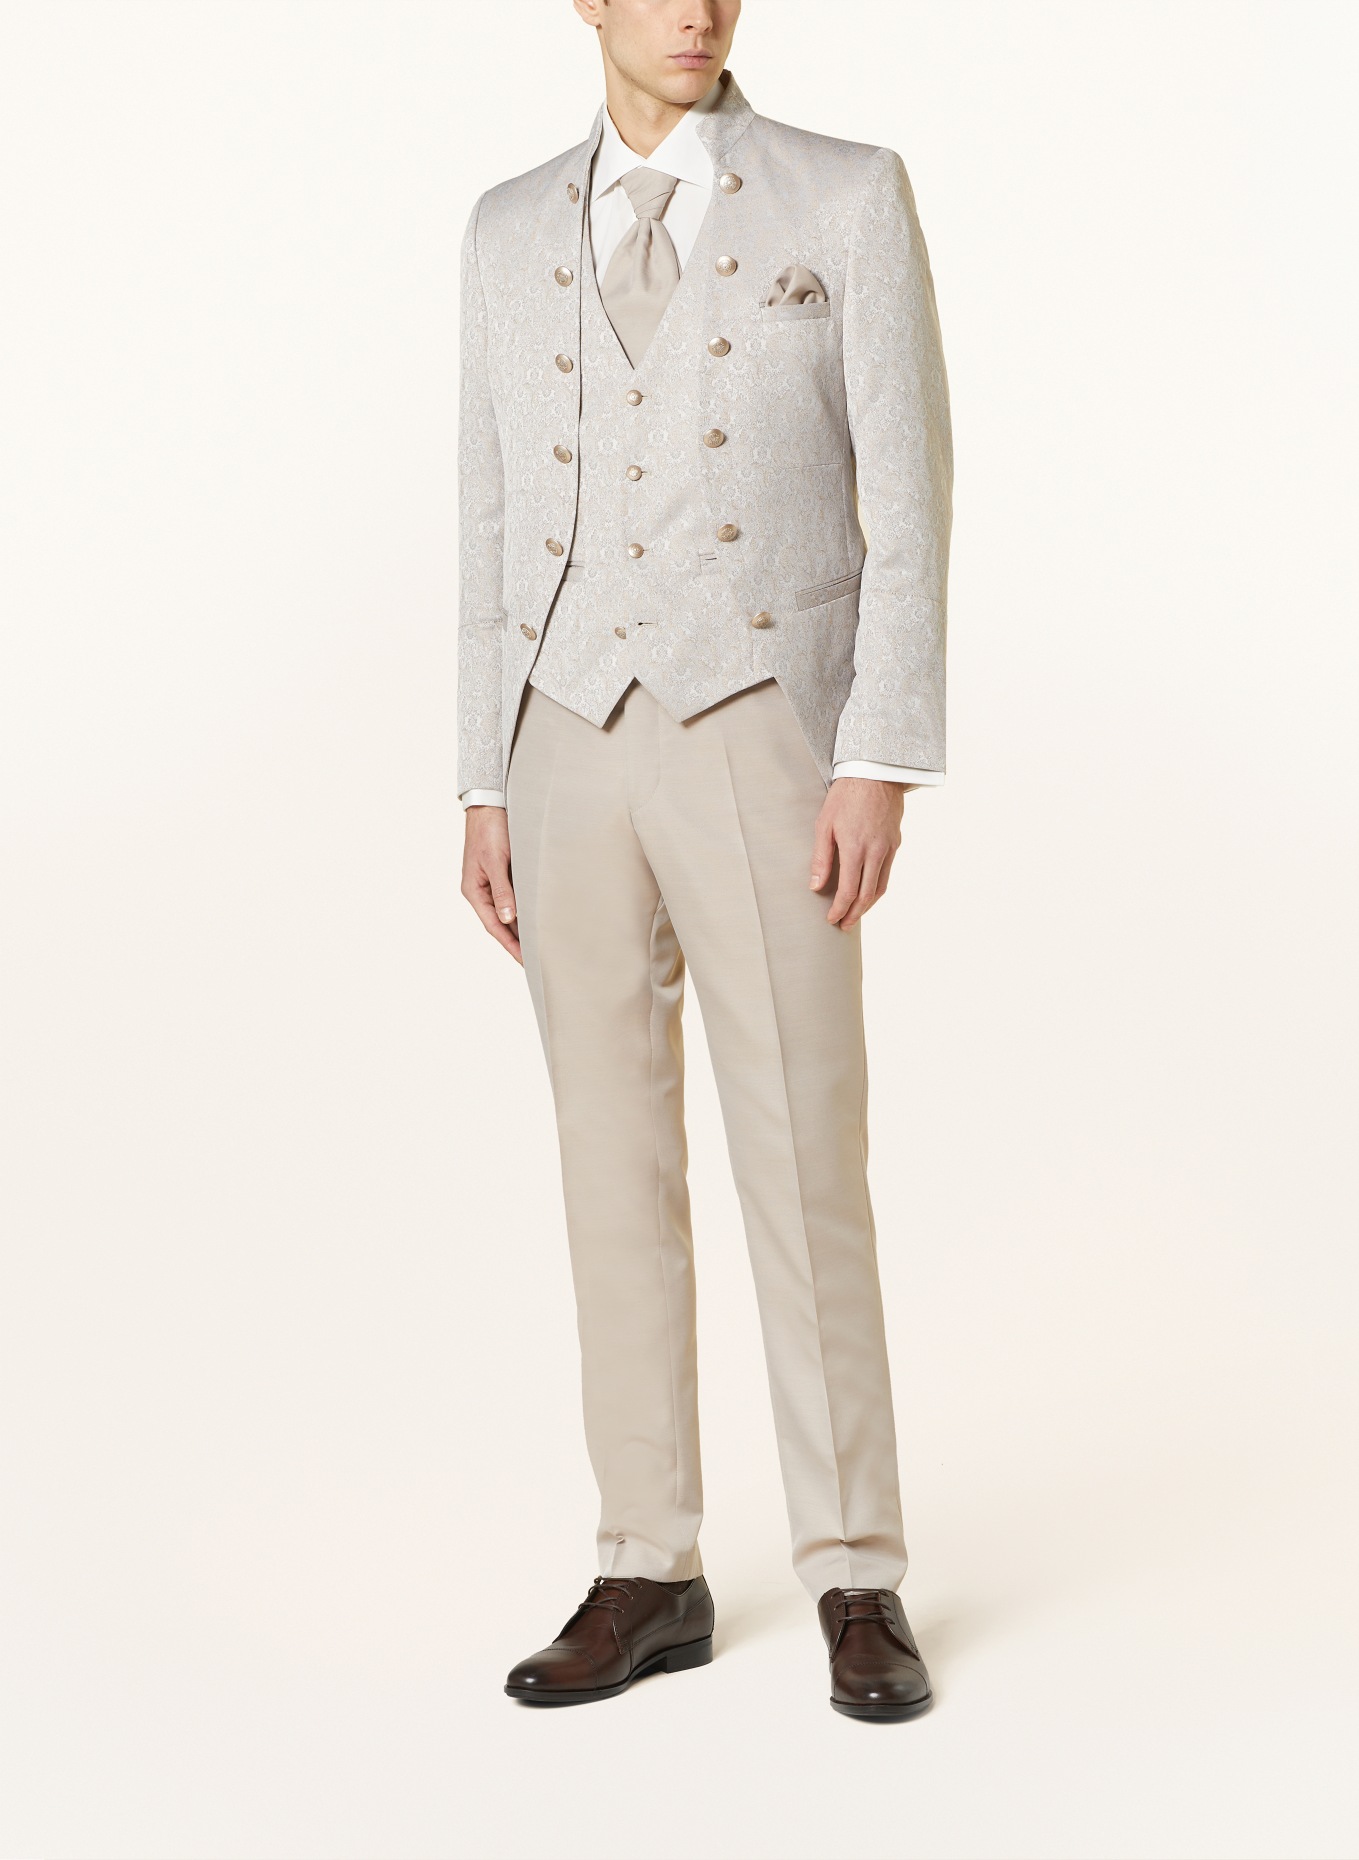 WILVORST Tailored jacket extra slim fit, Color: 083 Beige gem. (Image 2)